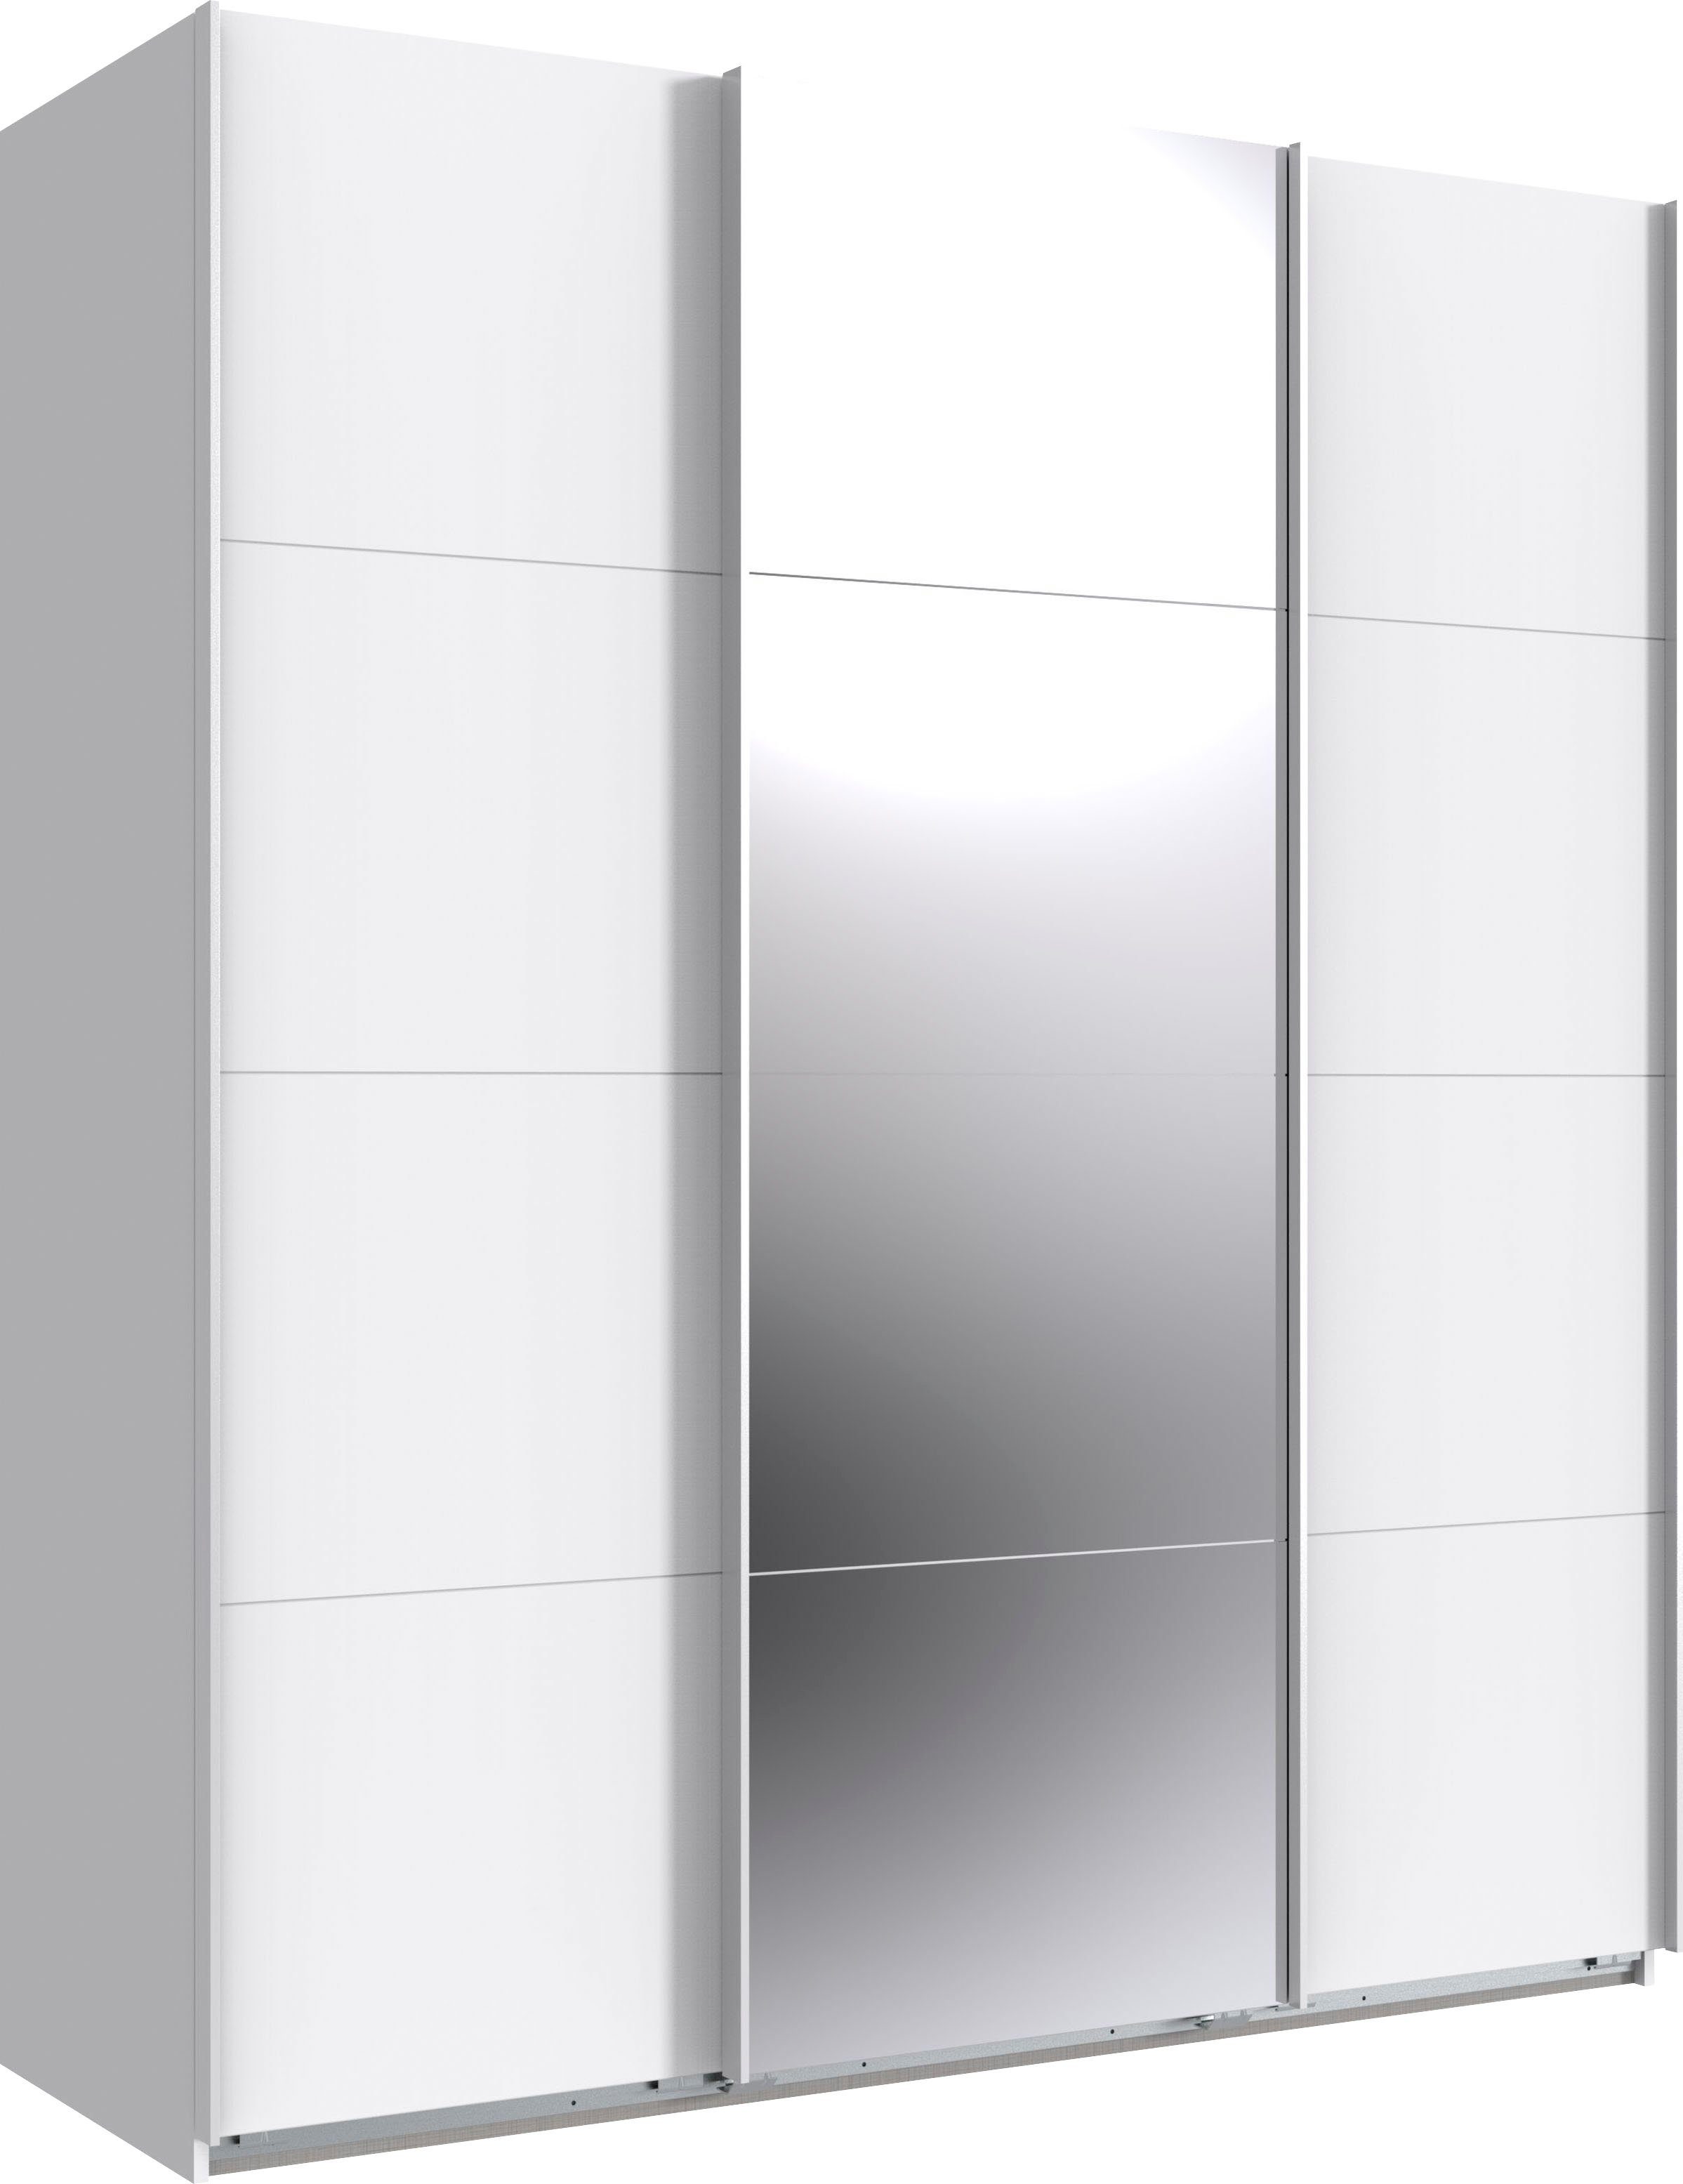 Wimex Schwebetürenschrank Norderstedt INKLUSIVE 2 Stoffboxen und 2 zusätzliche Einlegeböden Weiß/ Spiegel | Weiß | Schwebetürenschränke